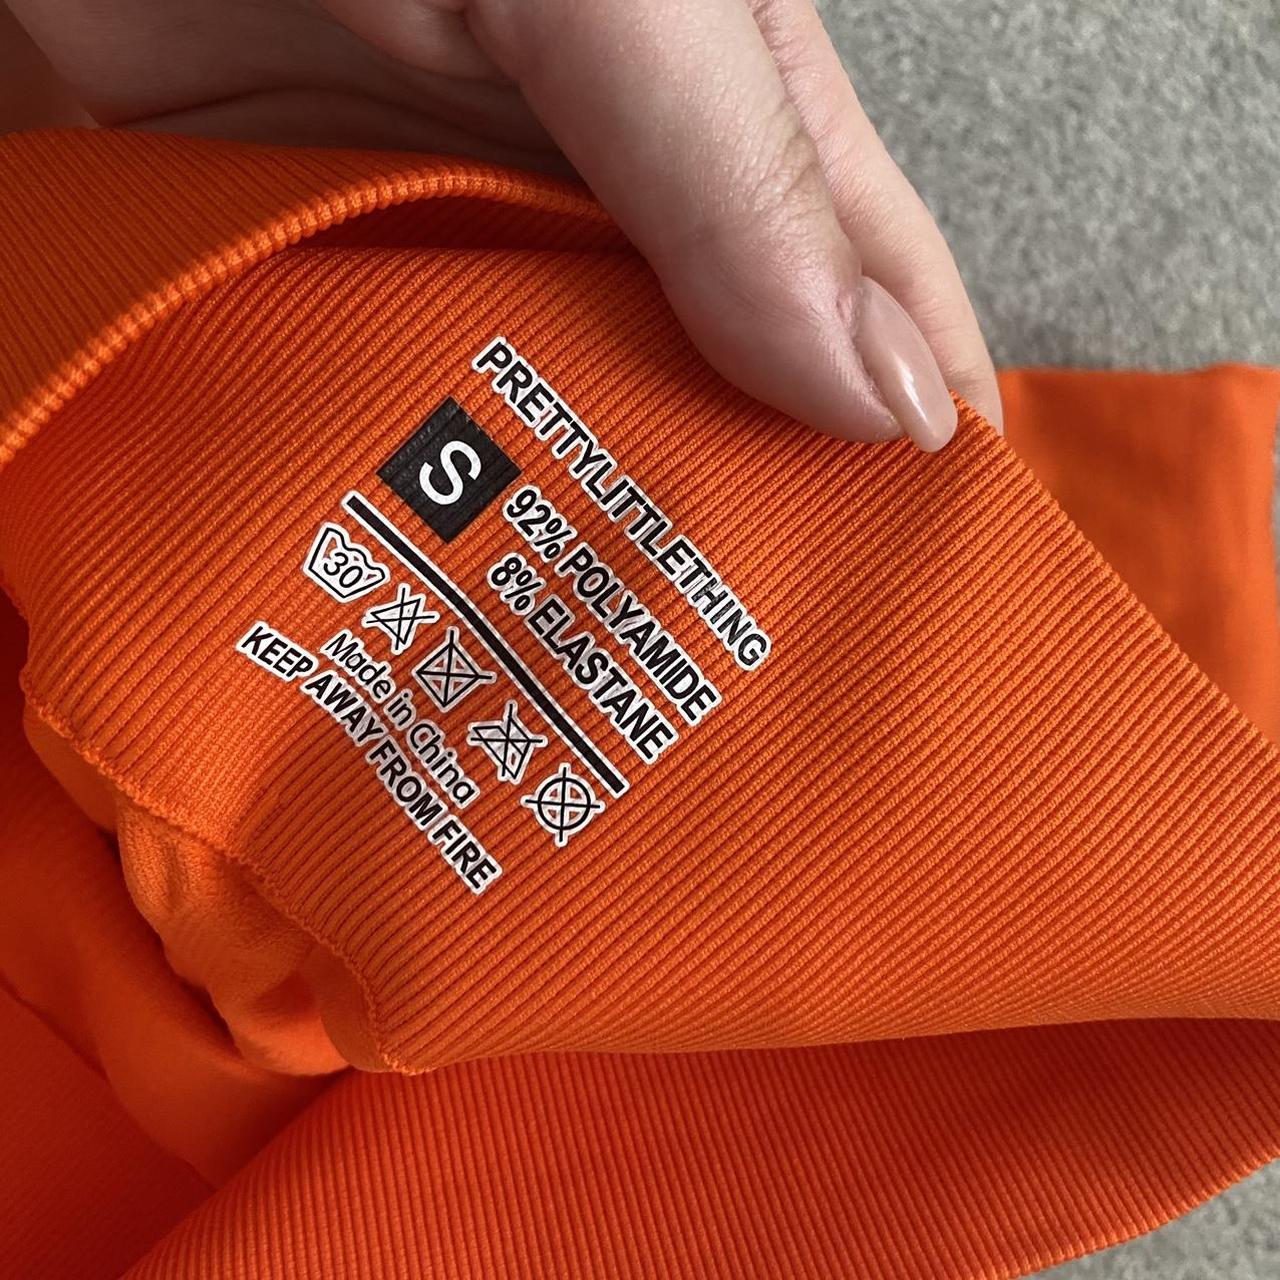 plt orange mesh leggings size 6 brand new never worn - Depop